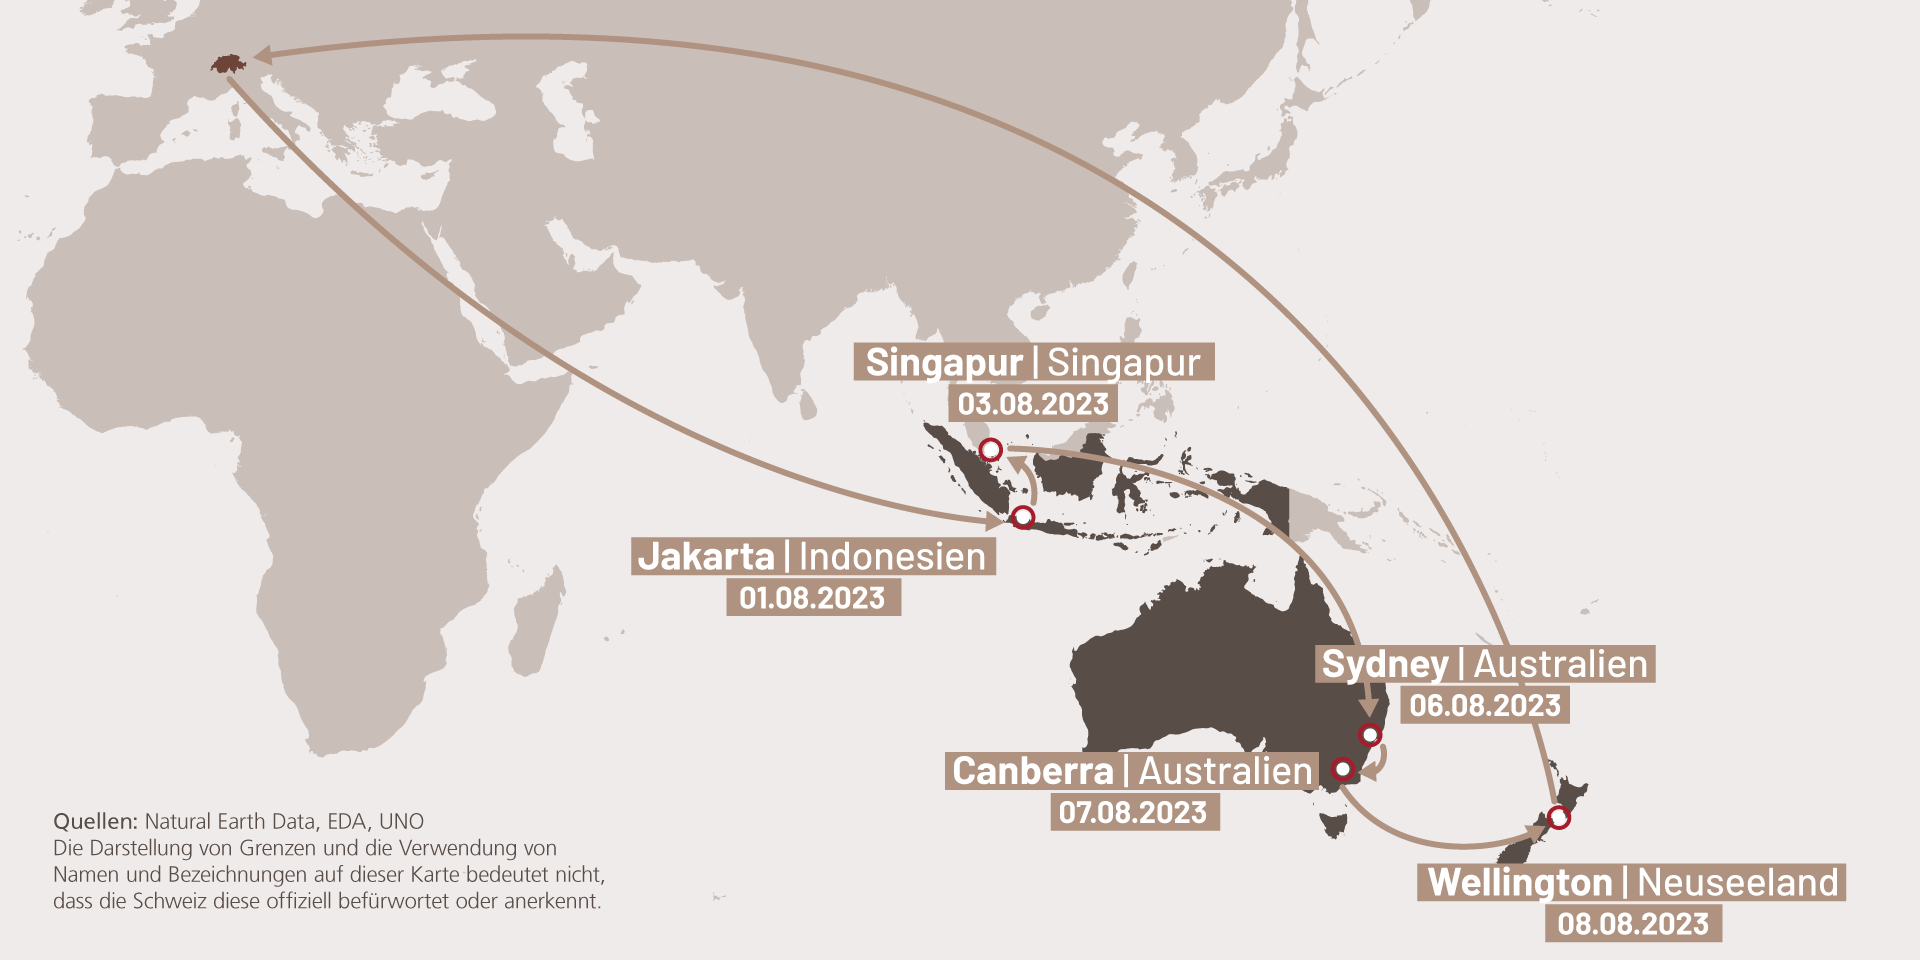 Infografik, die die Etappen der Reise von Ignazio Cassis nach Indonesien, Singapur, Australien und Neuseeland darstellt.